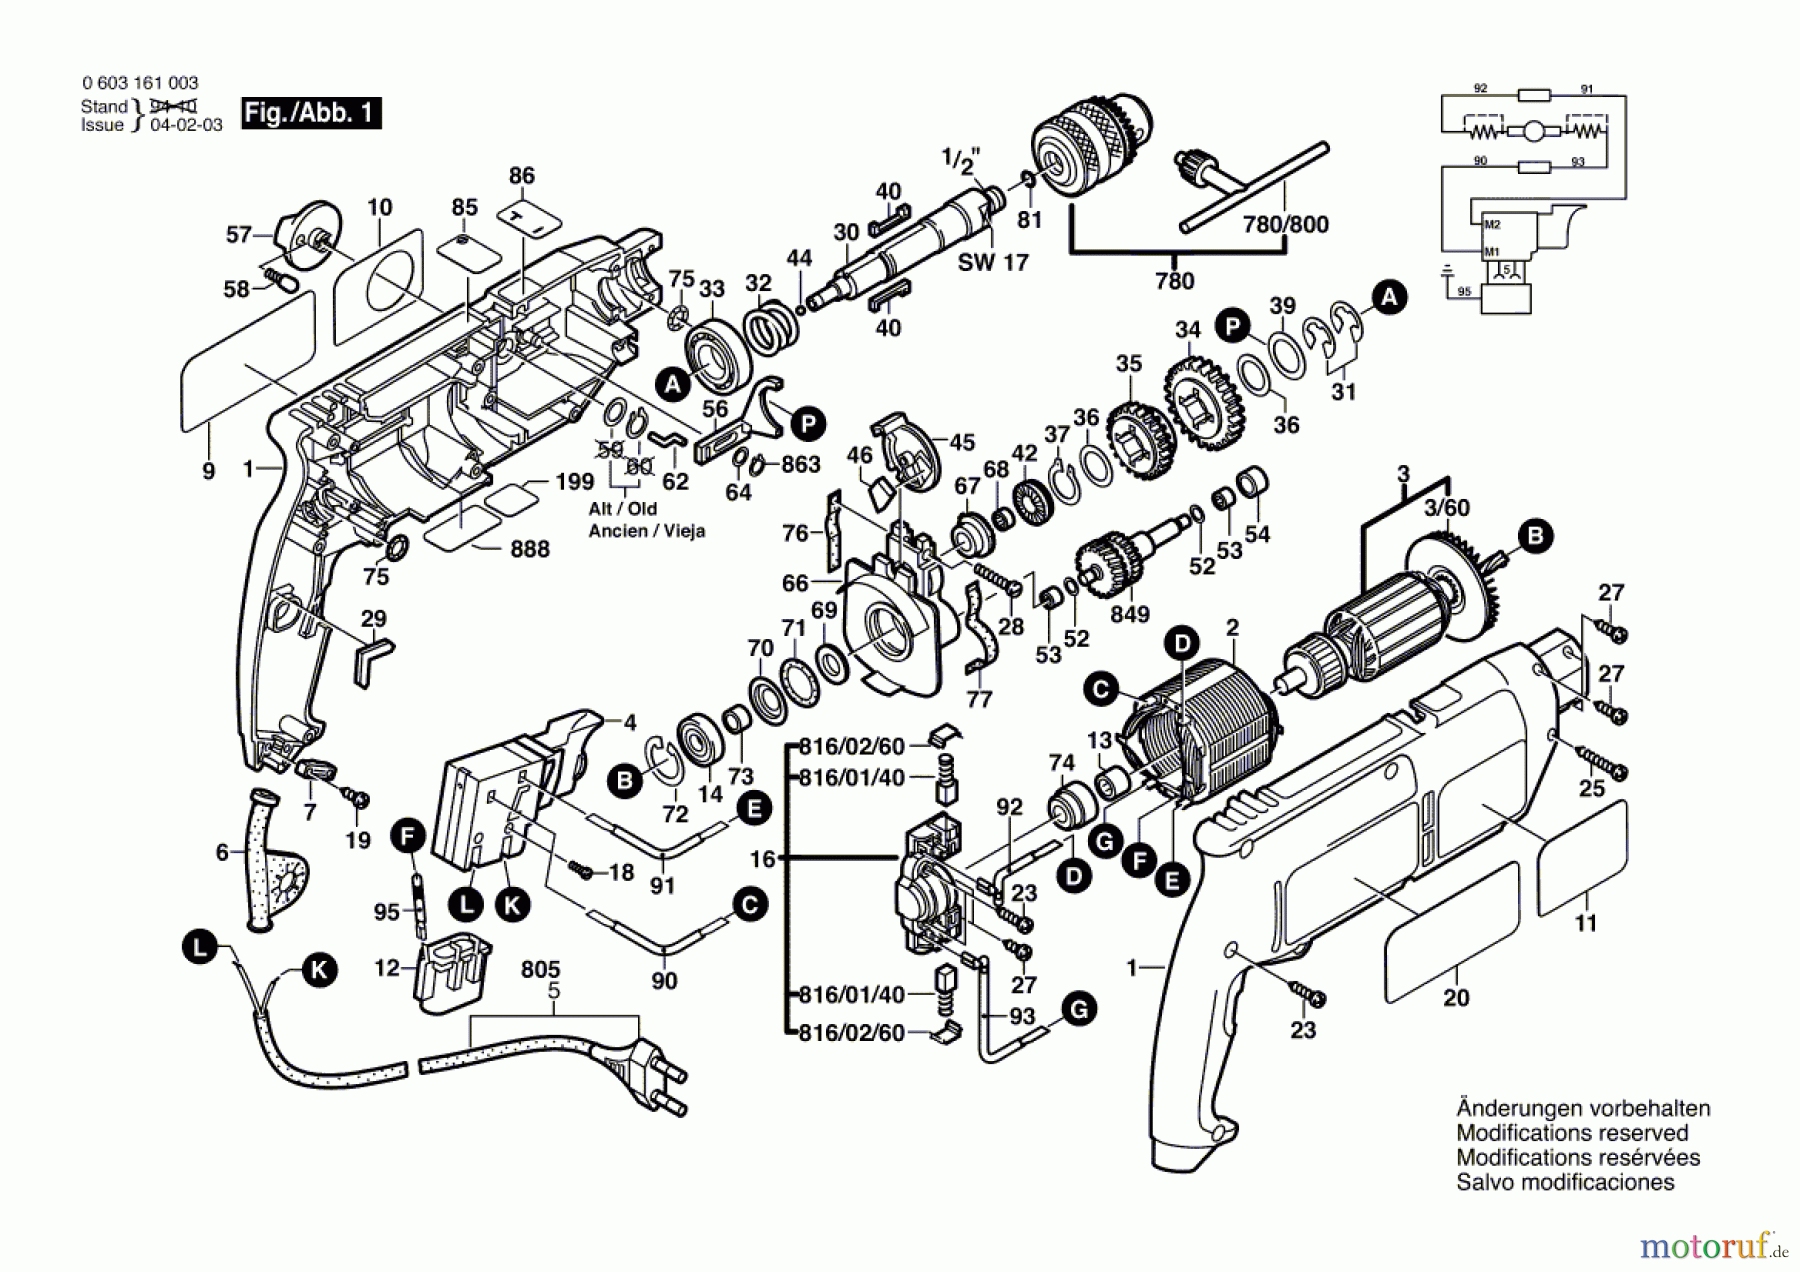  Bosch Werkzeug Schlagbohrmaschine CSB 650-2 Seite 1